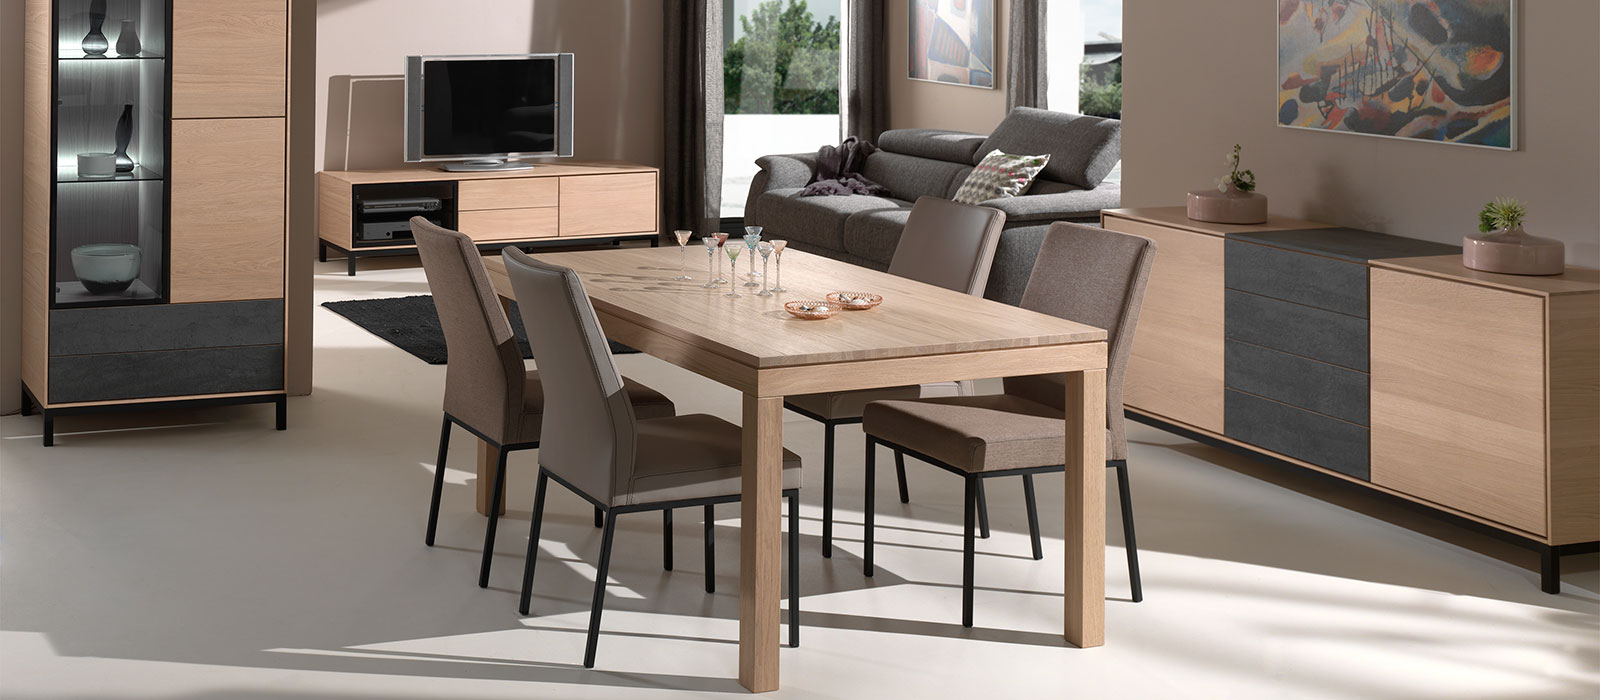 Modena - Belgian oak furniture